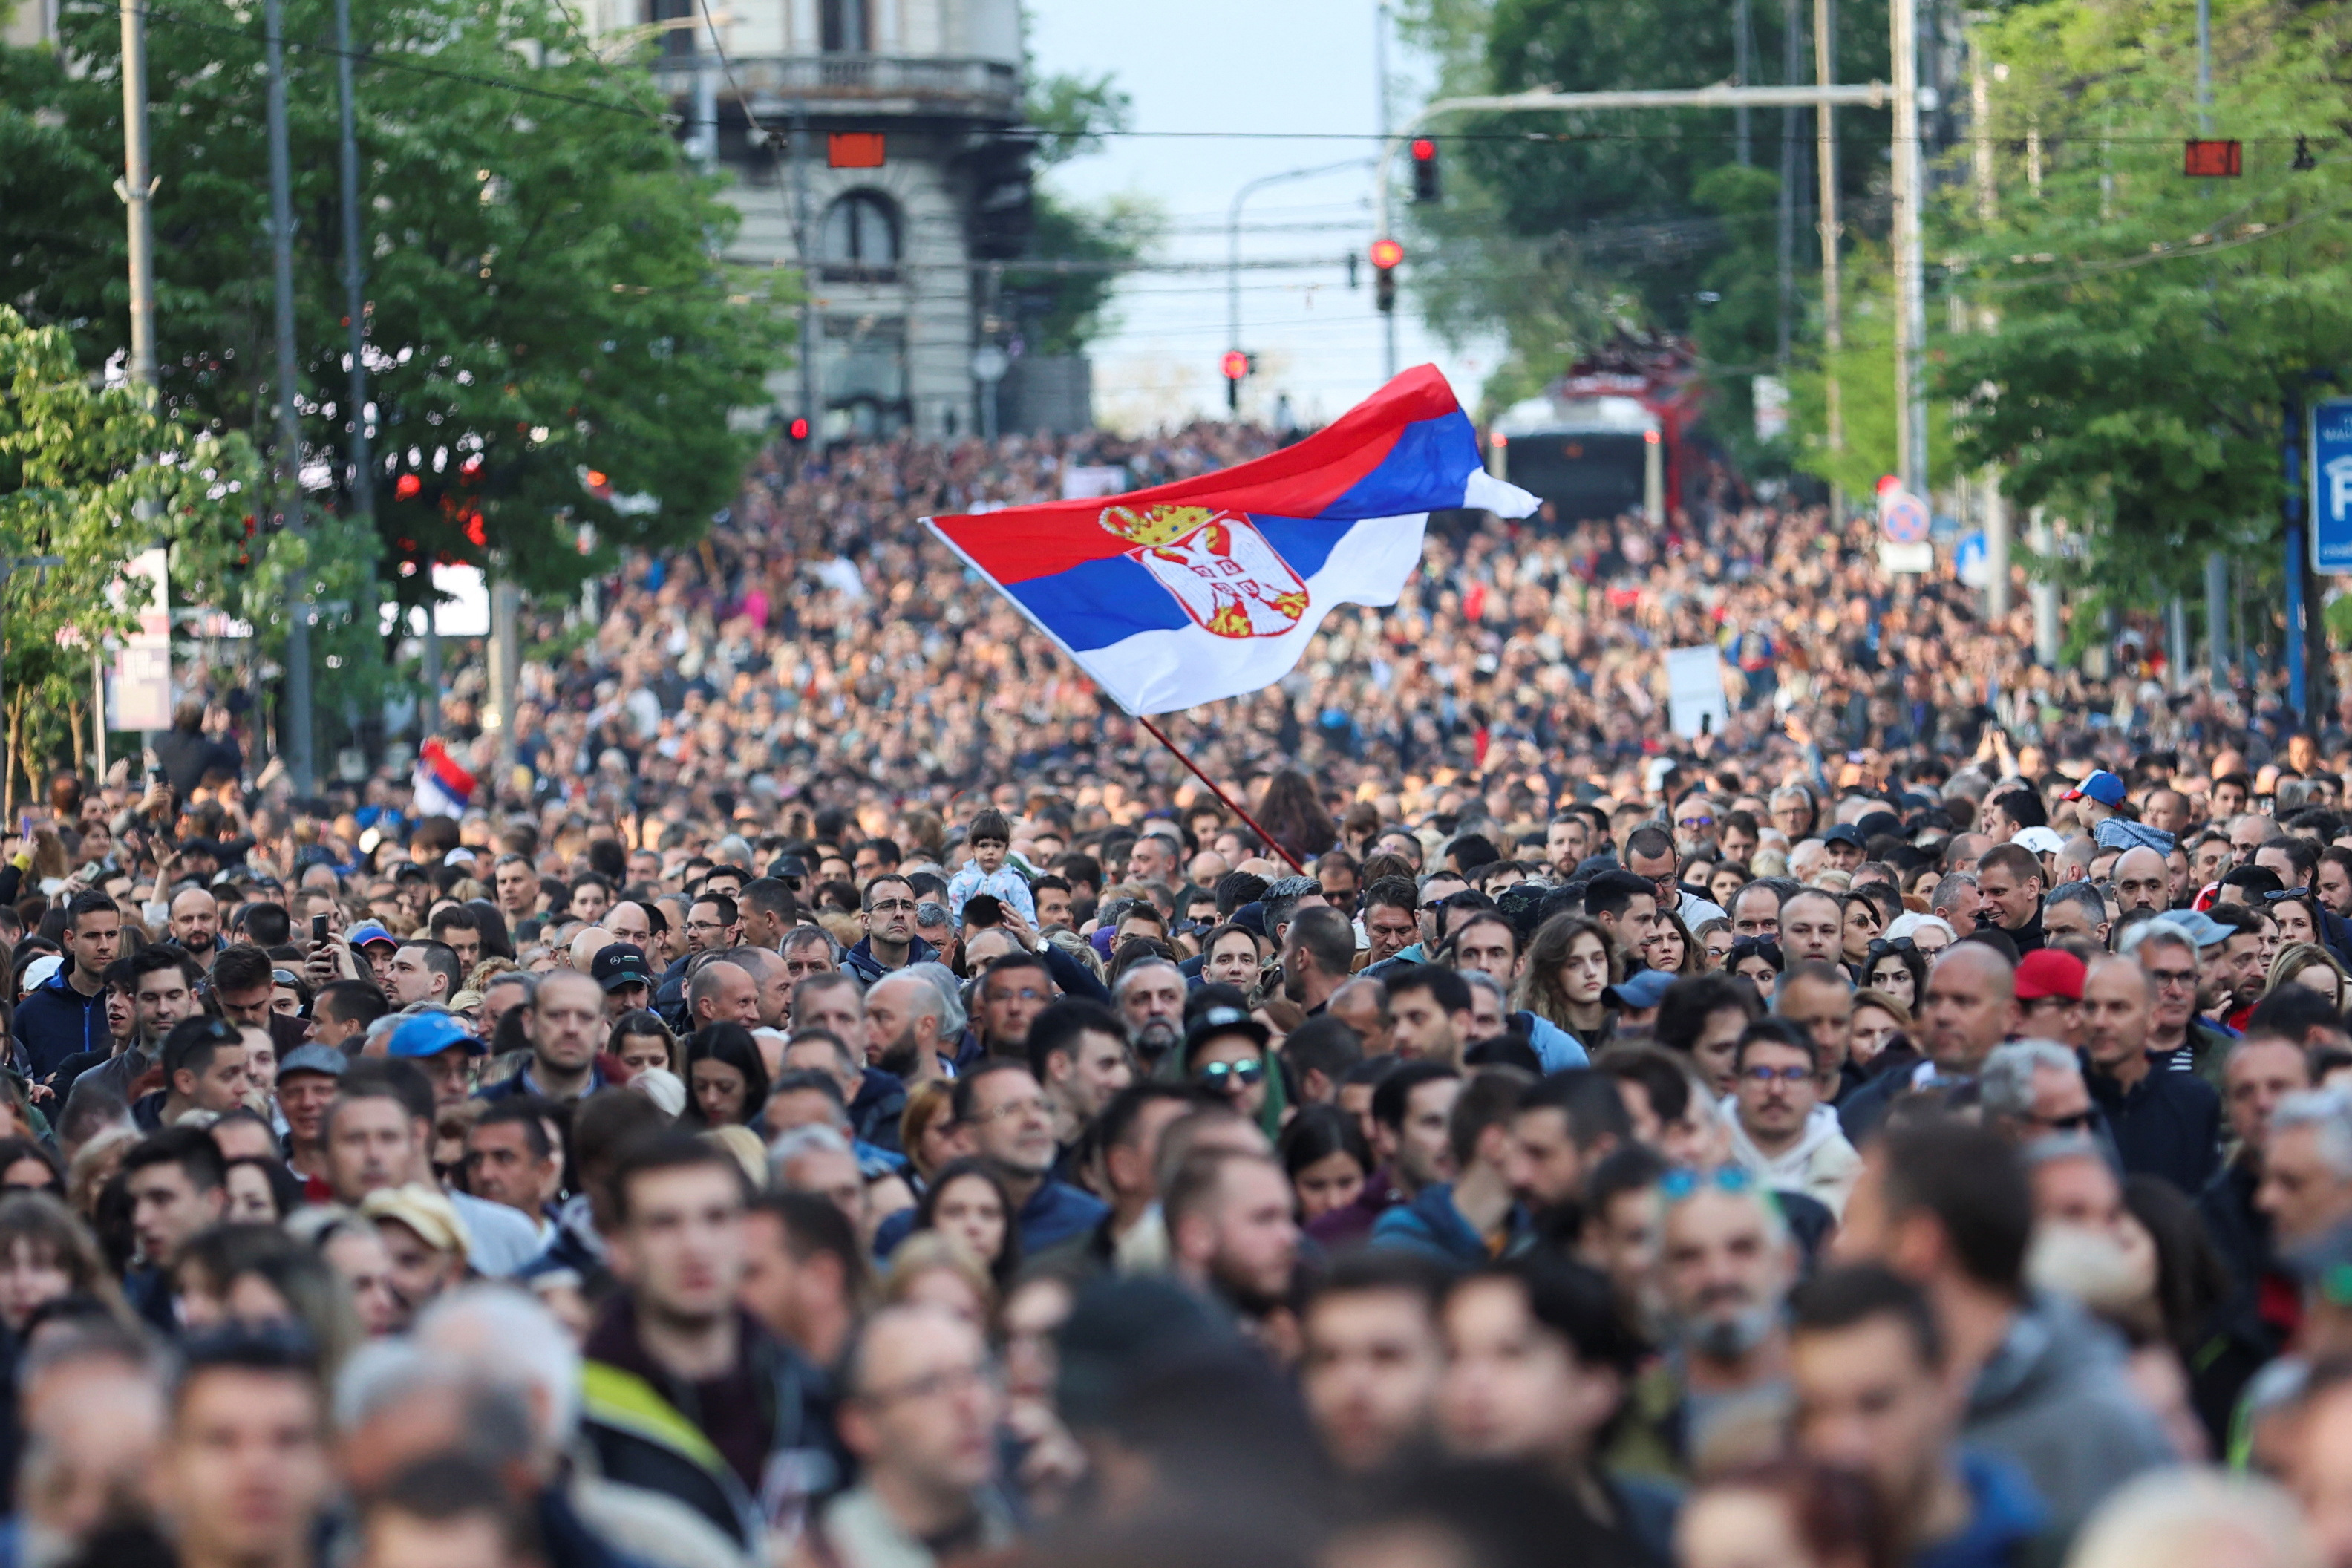 Las calles de Serbia se llenaron con miles de manifestantes tras tiroteos masivos  